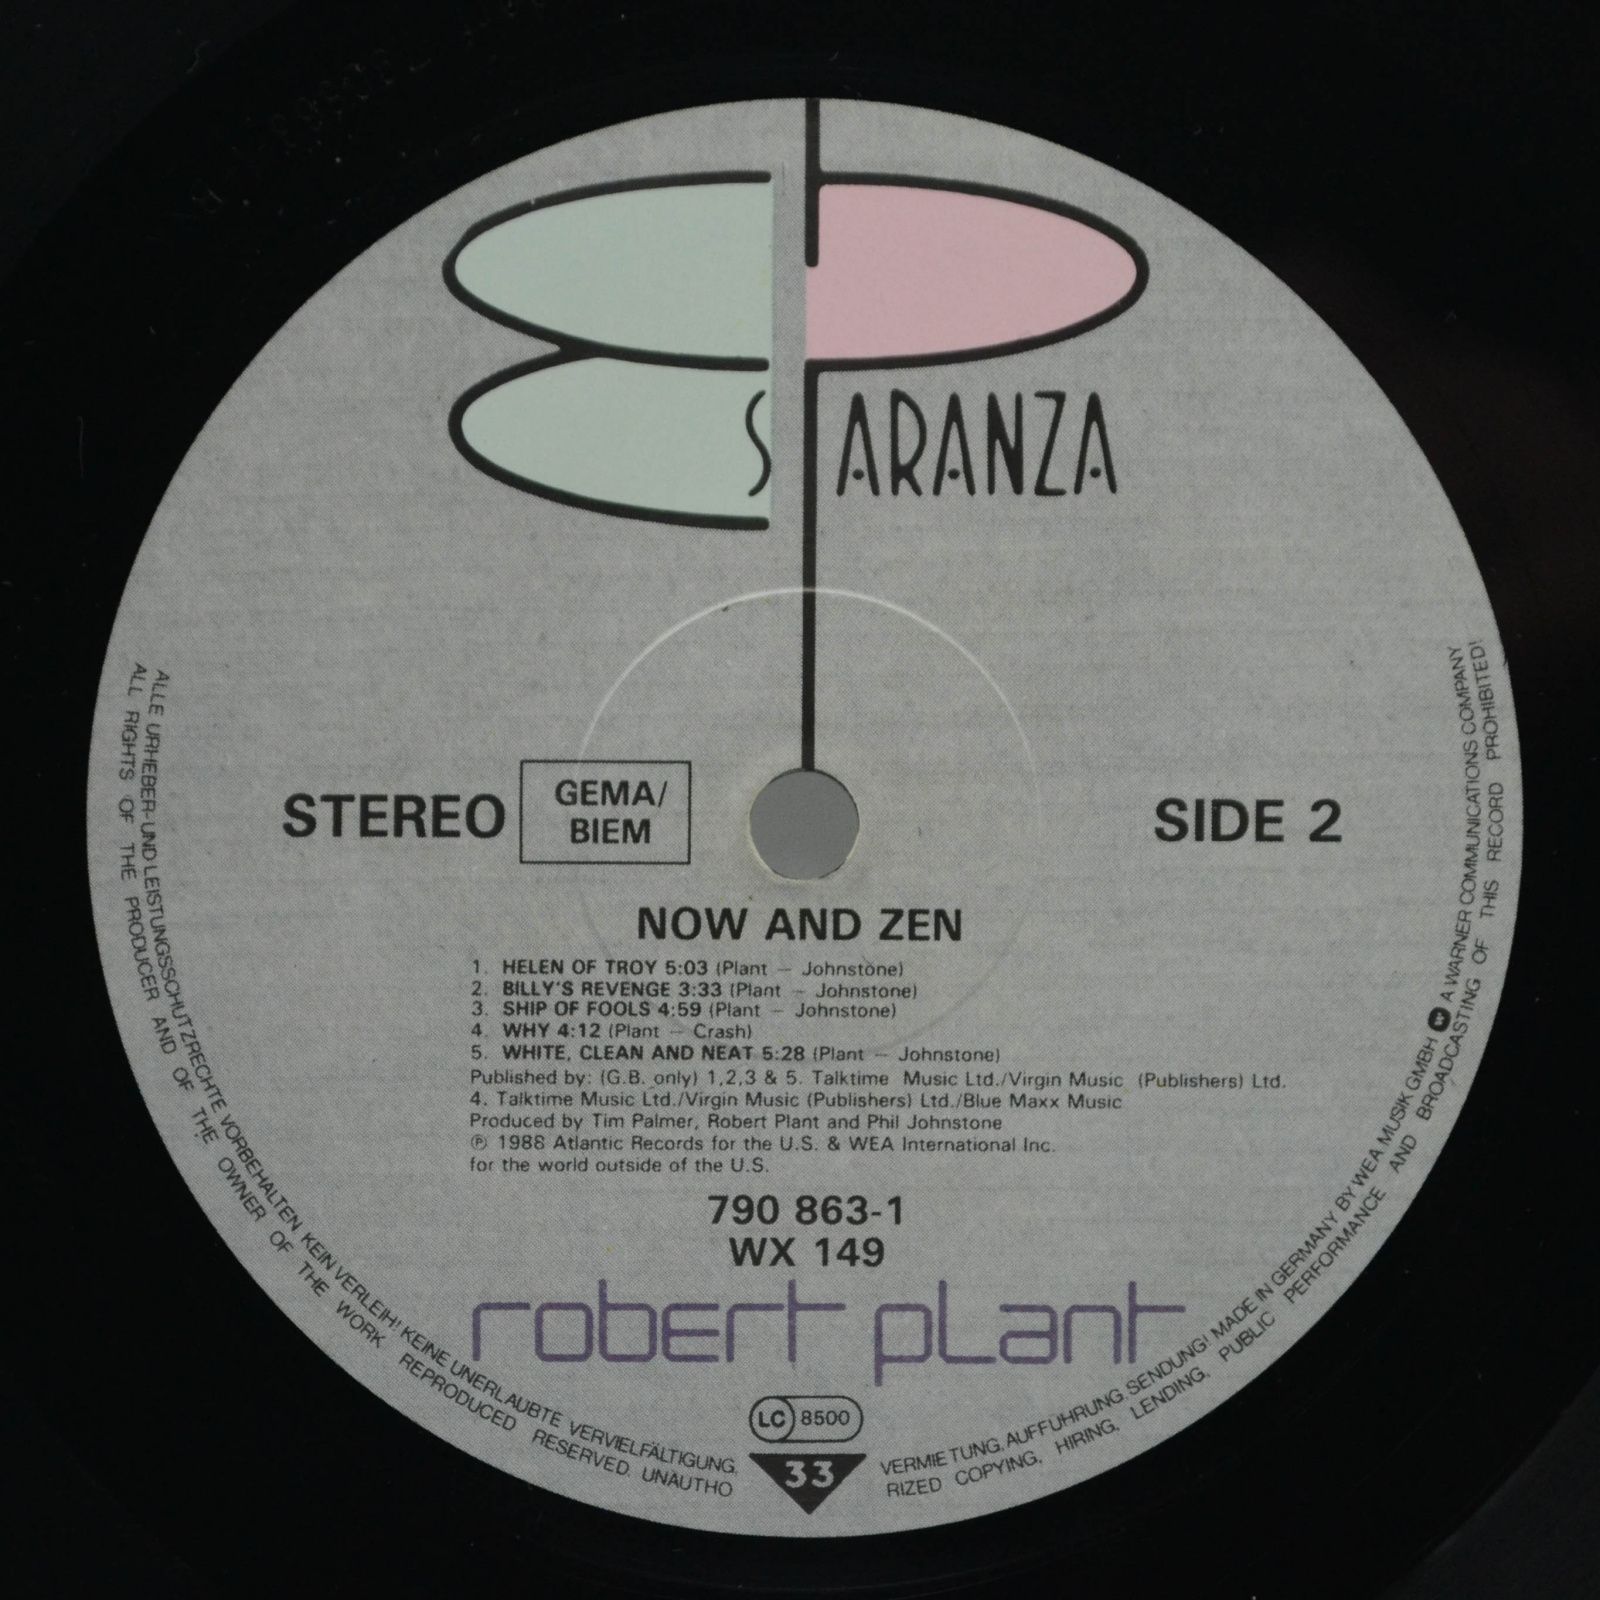 Robert Plant — Now And Zen, 1988